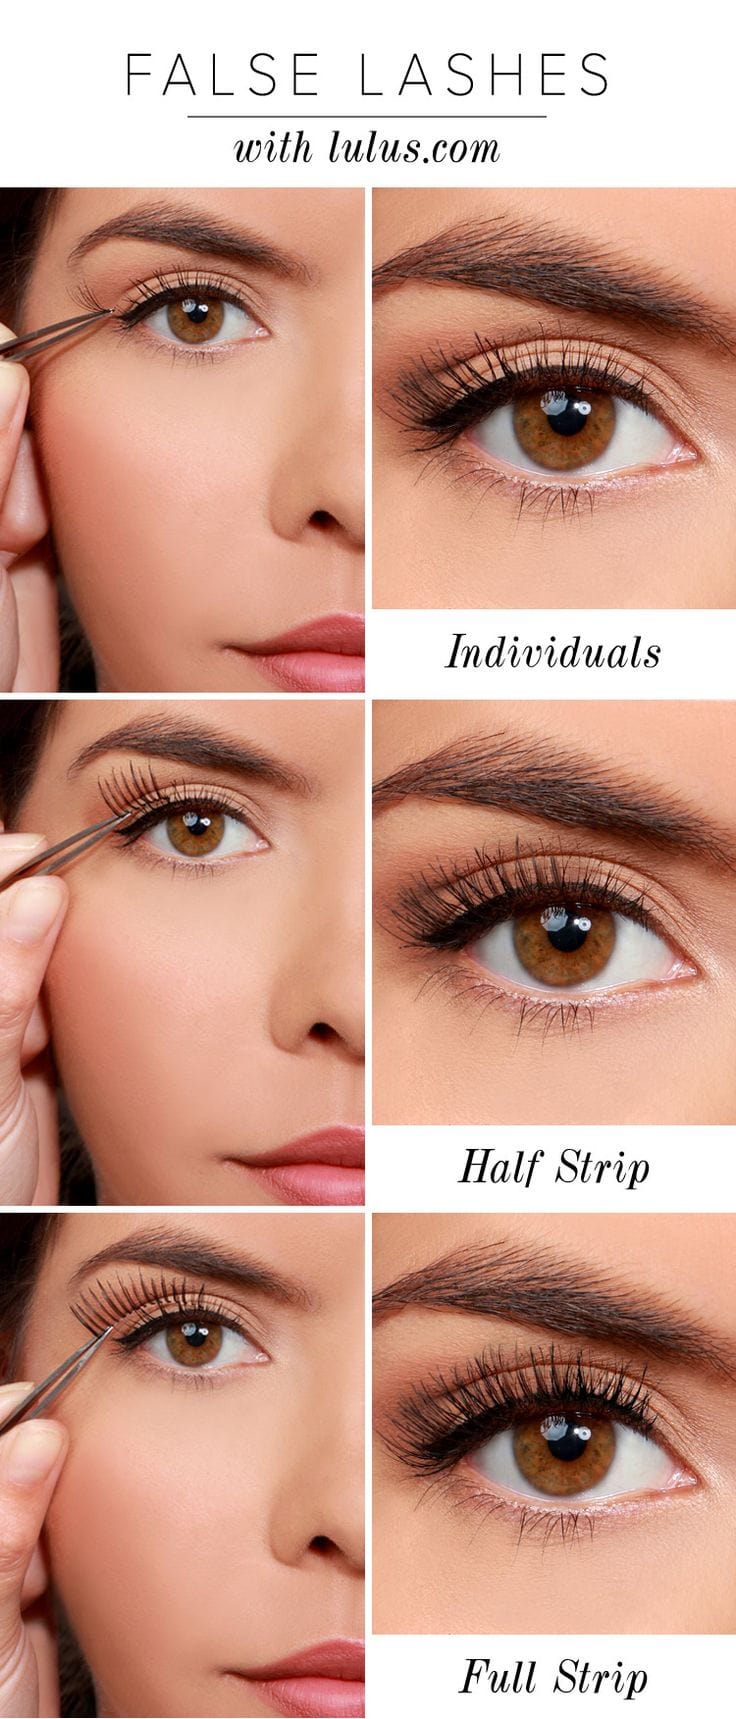 how to apply false eyelashes properly